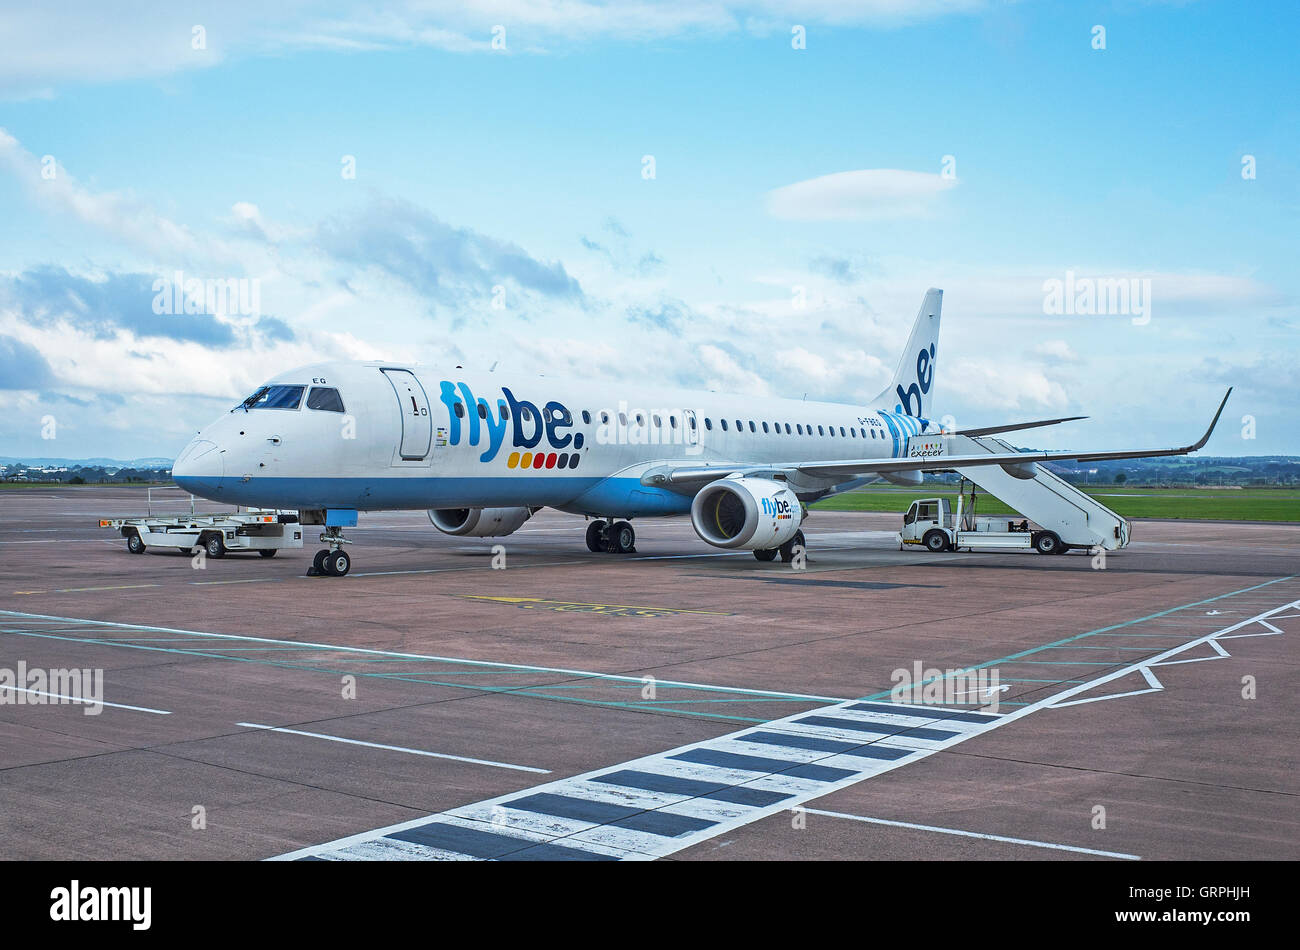 Flybe aircraft Banque de photographies et d'images à haute résolution -  Alamy